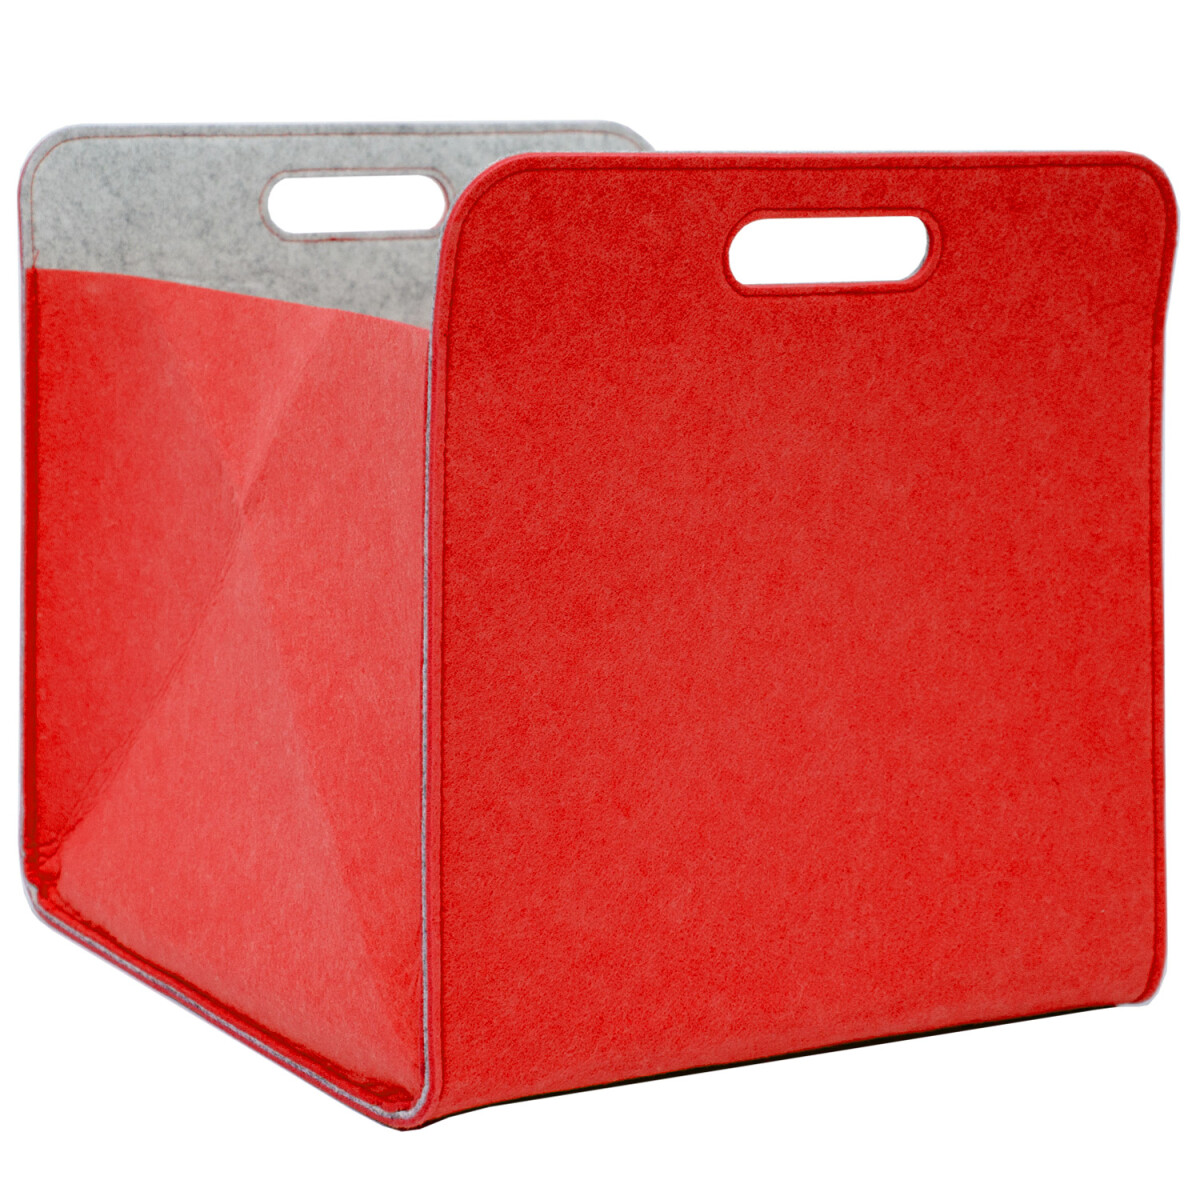 Aufbewahrungsbox 2er Set Cube Filz Rot 33x38x33cm